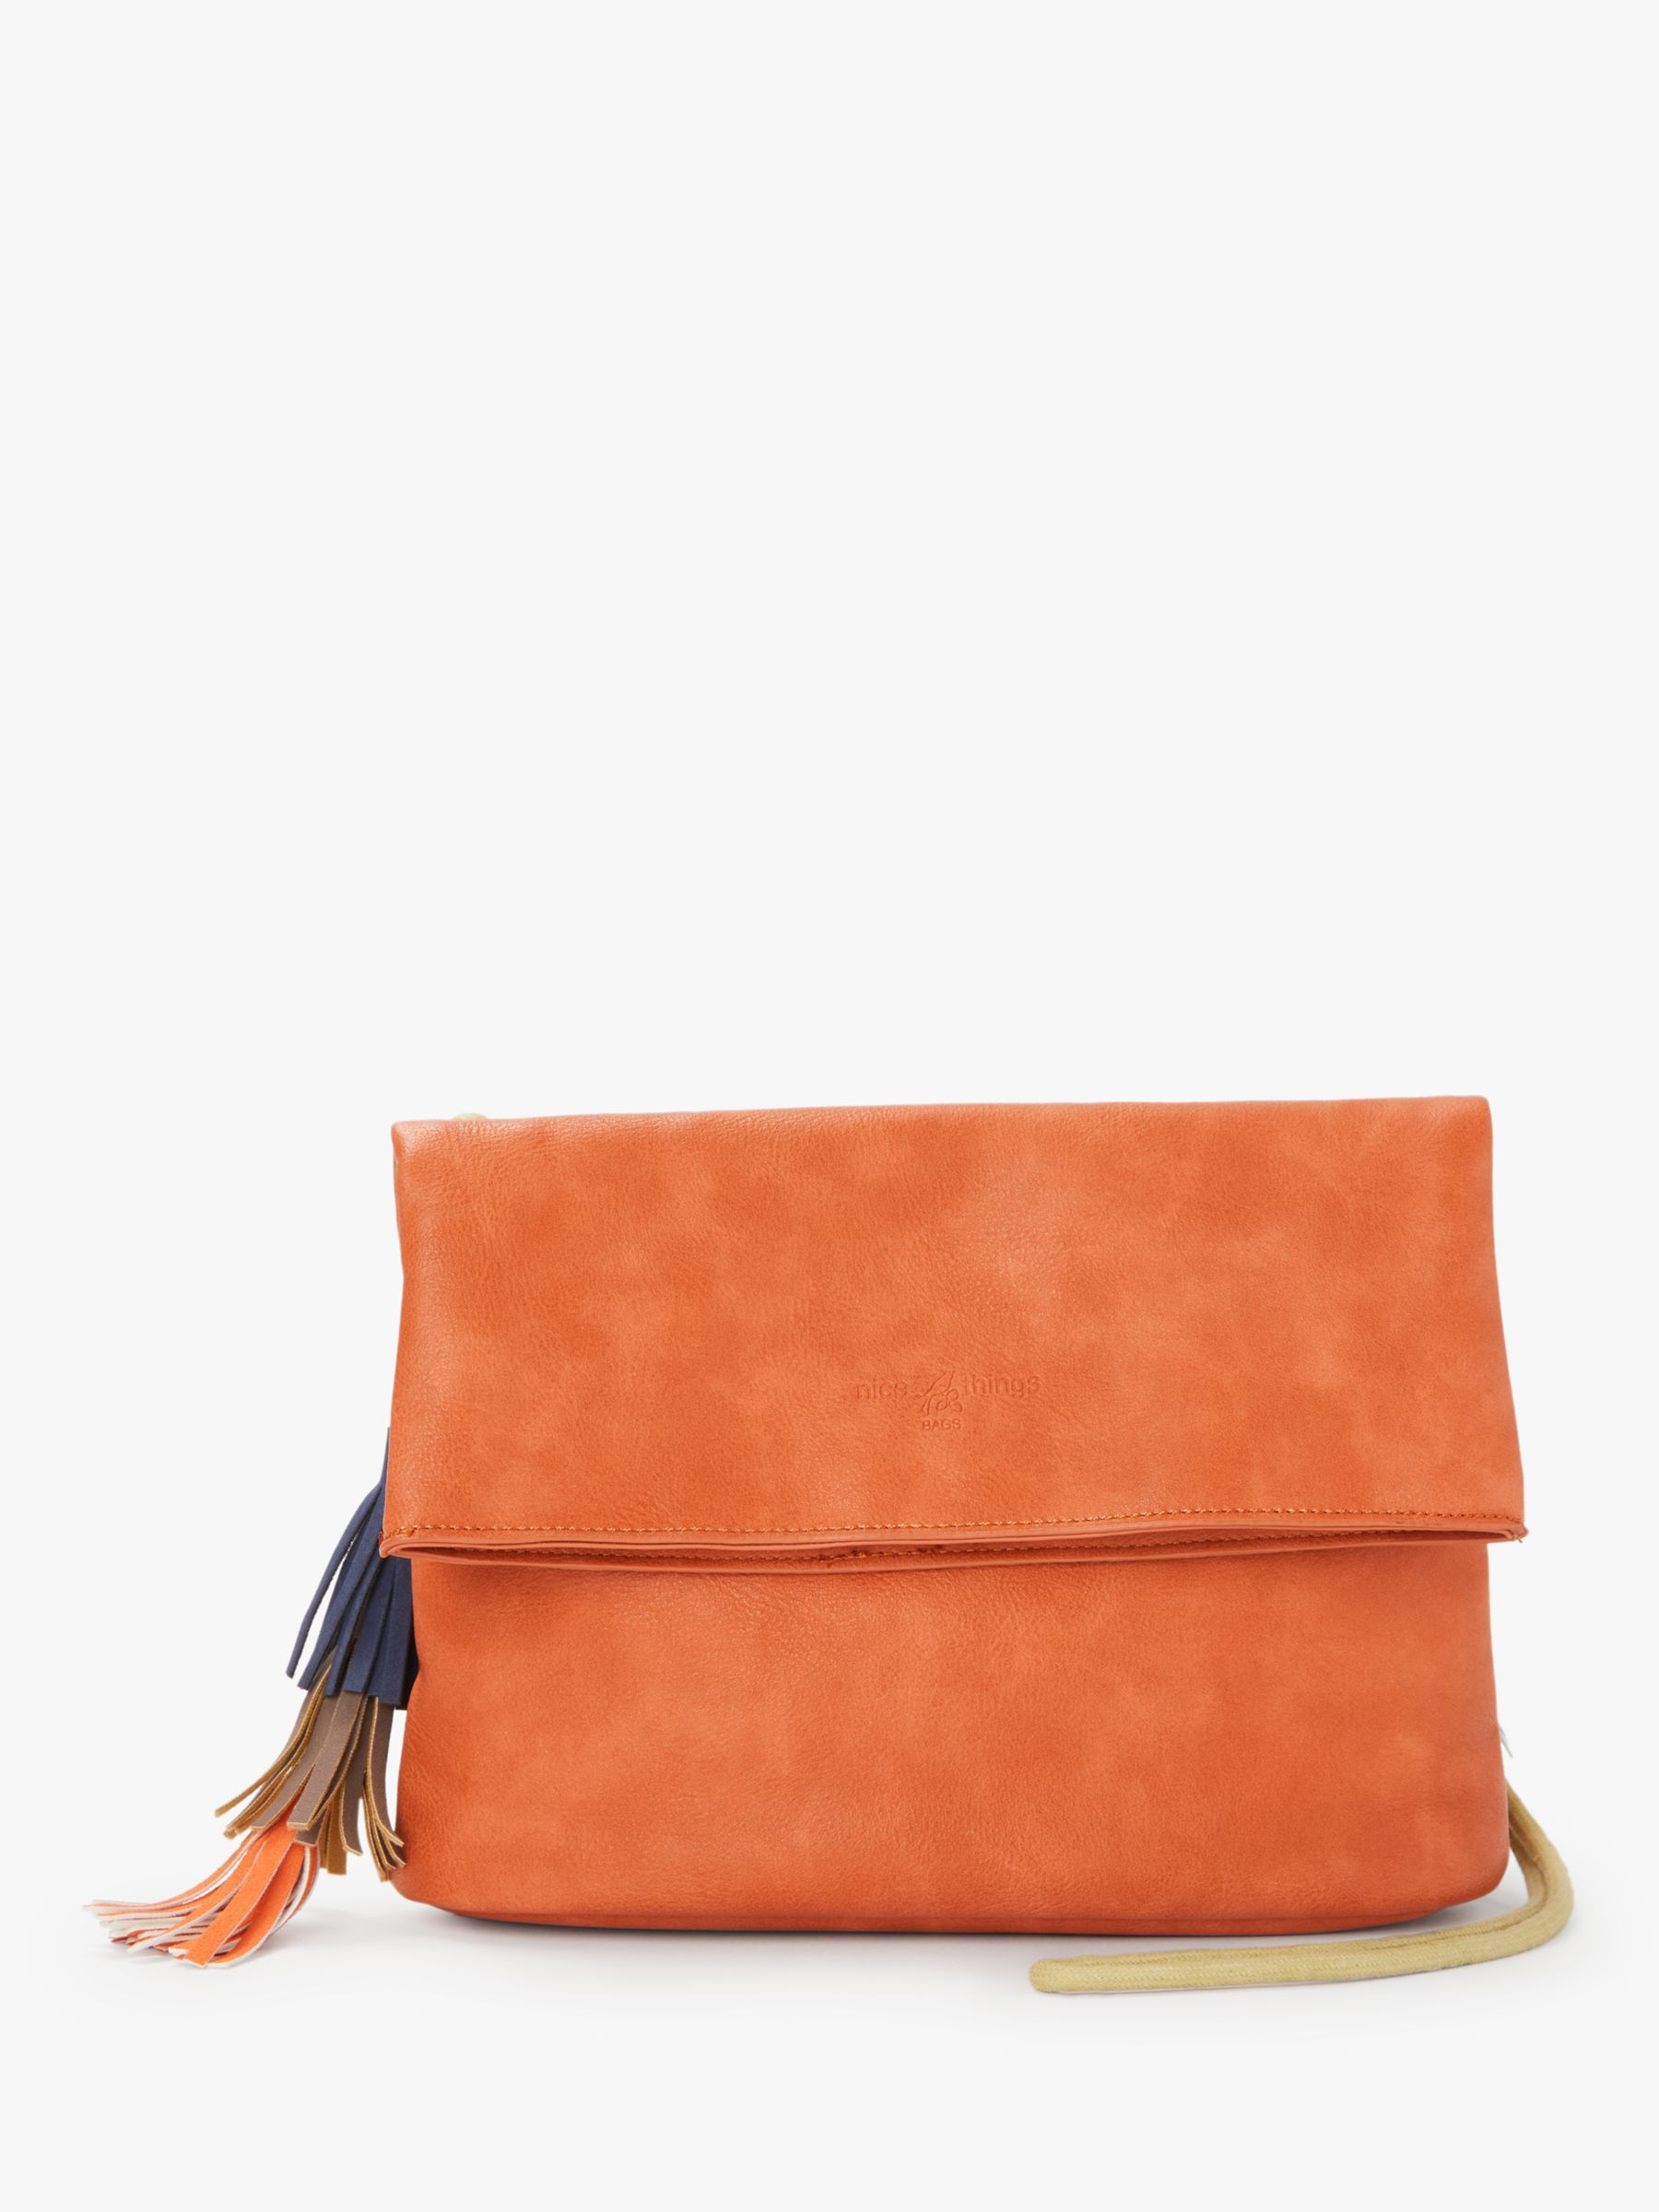 Handbags, Bags & Purses | John Lewis & Partners